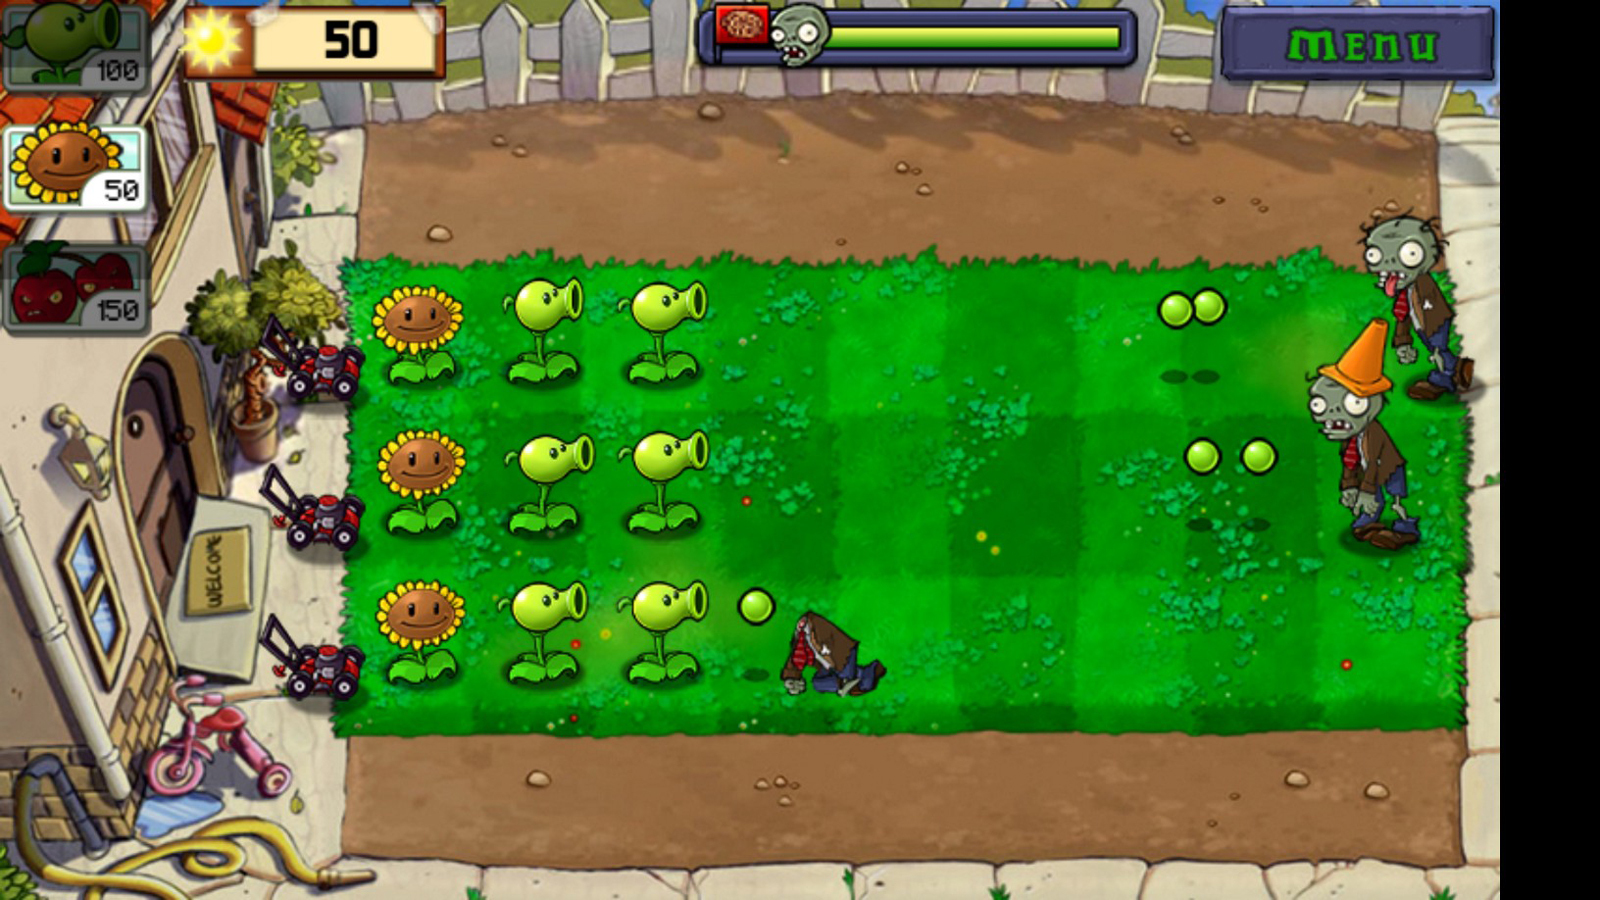 1. Plants vs. Zombies